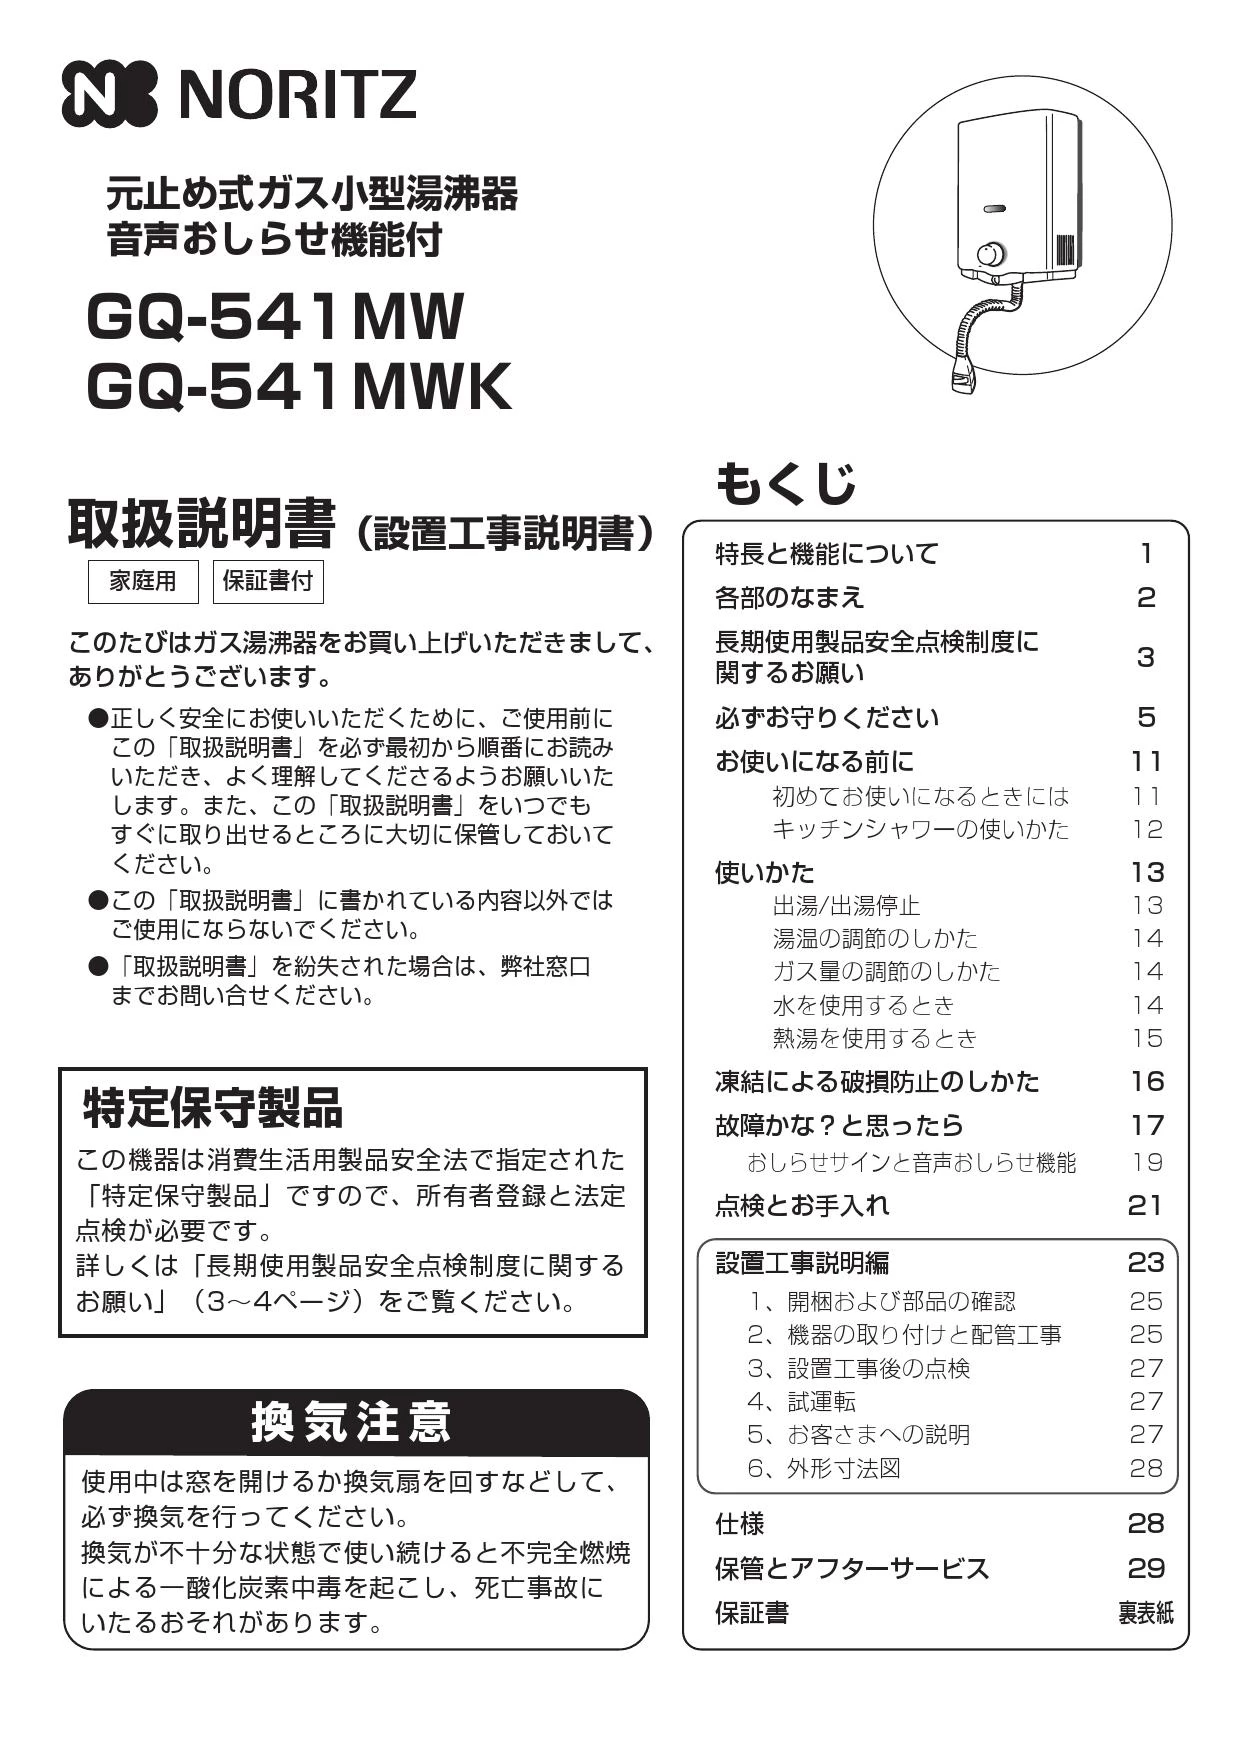 ノーリツ GQ-541MW取扱説明書 商品図面 | 通販 プロストア ダイレクト